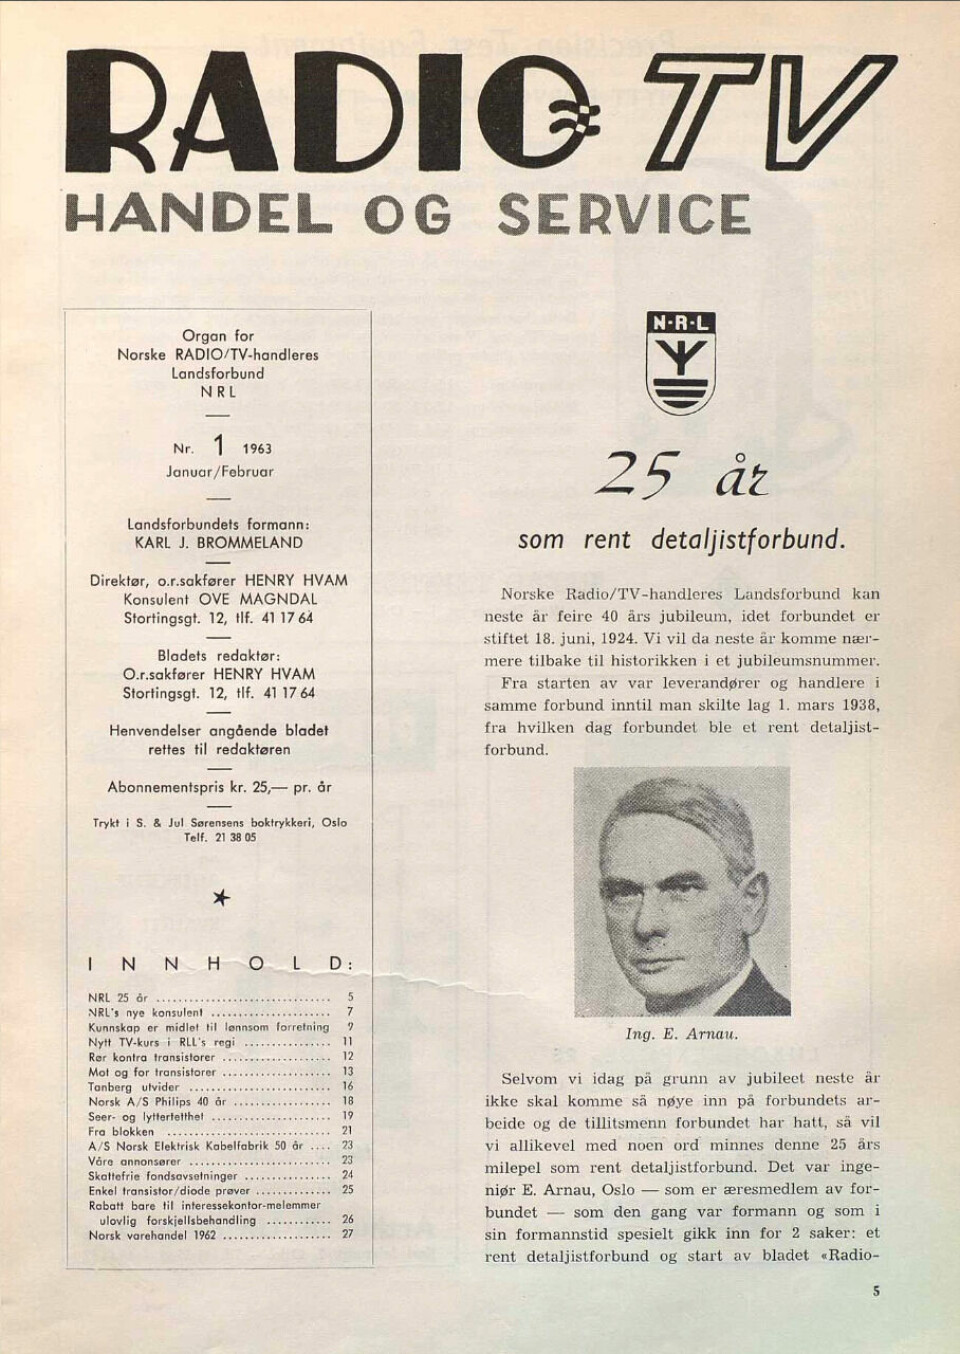 Norske Radio/TV-handleres Landsforbund ble stiftet 18. juni 1924. I Radio-TV nr. 1/1963 omtalte bladet at det var 25 år siden leverandører og detaljister skilte lag. Faksimile.